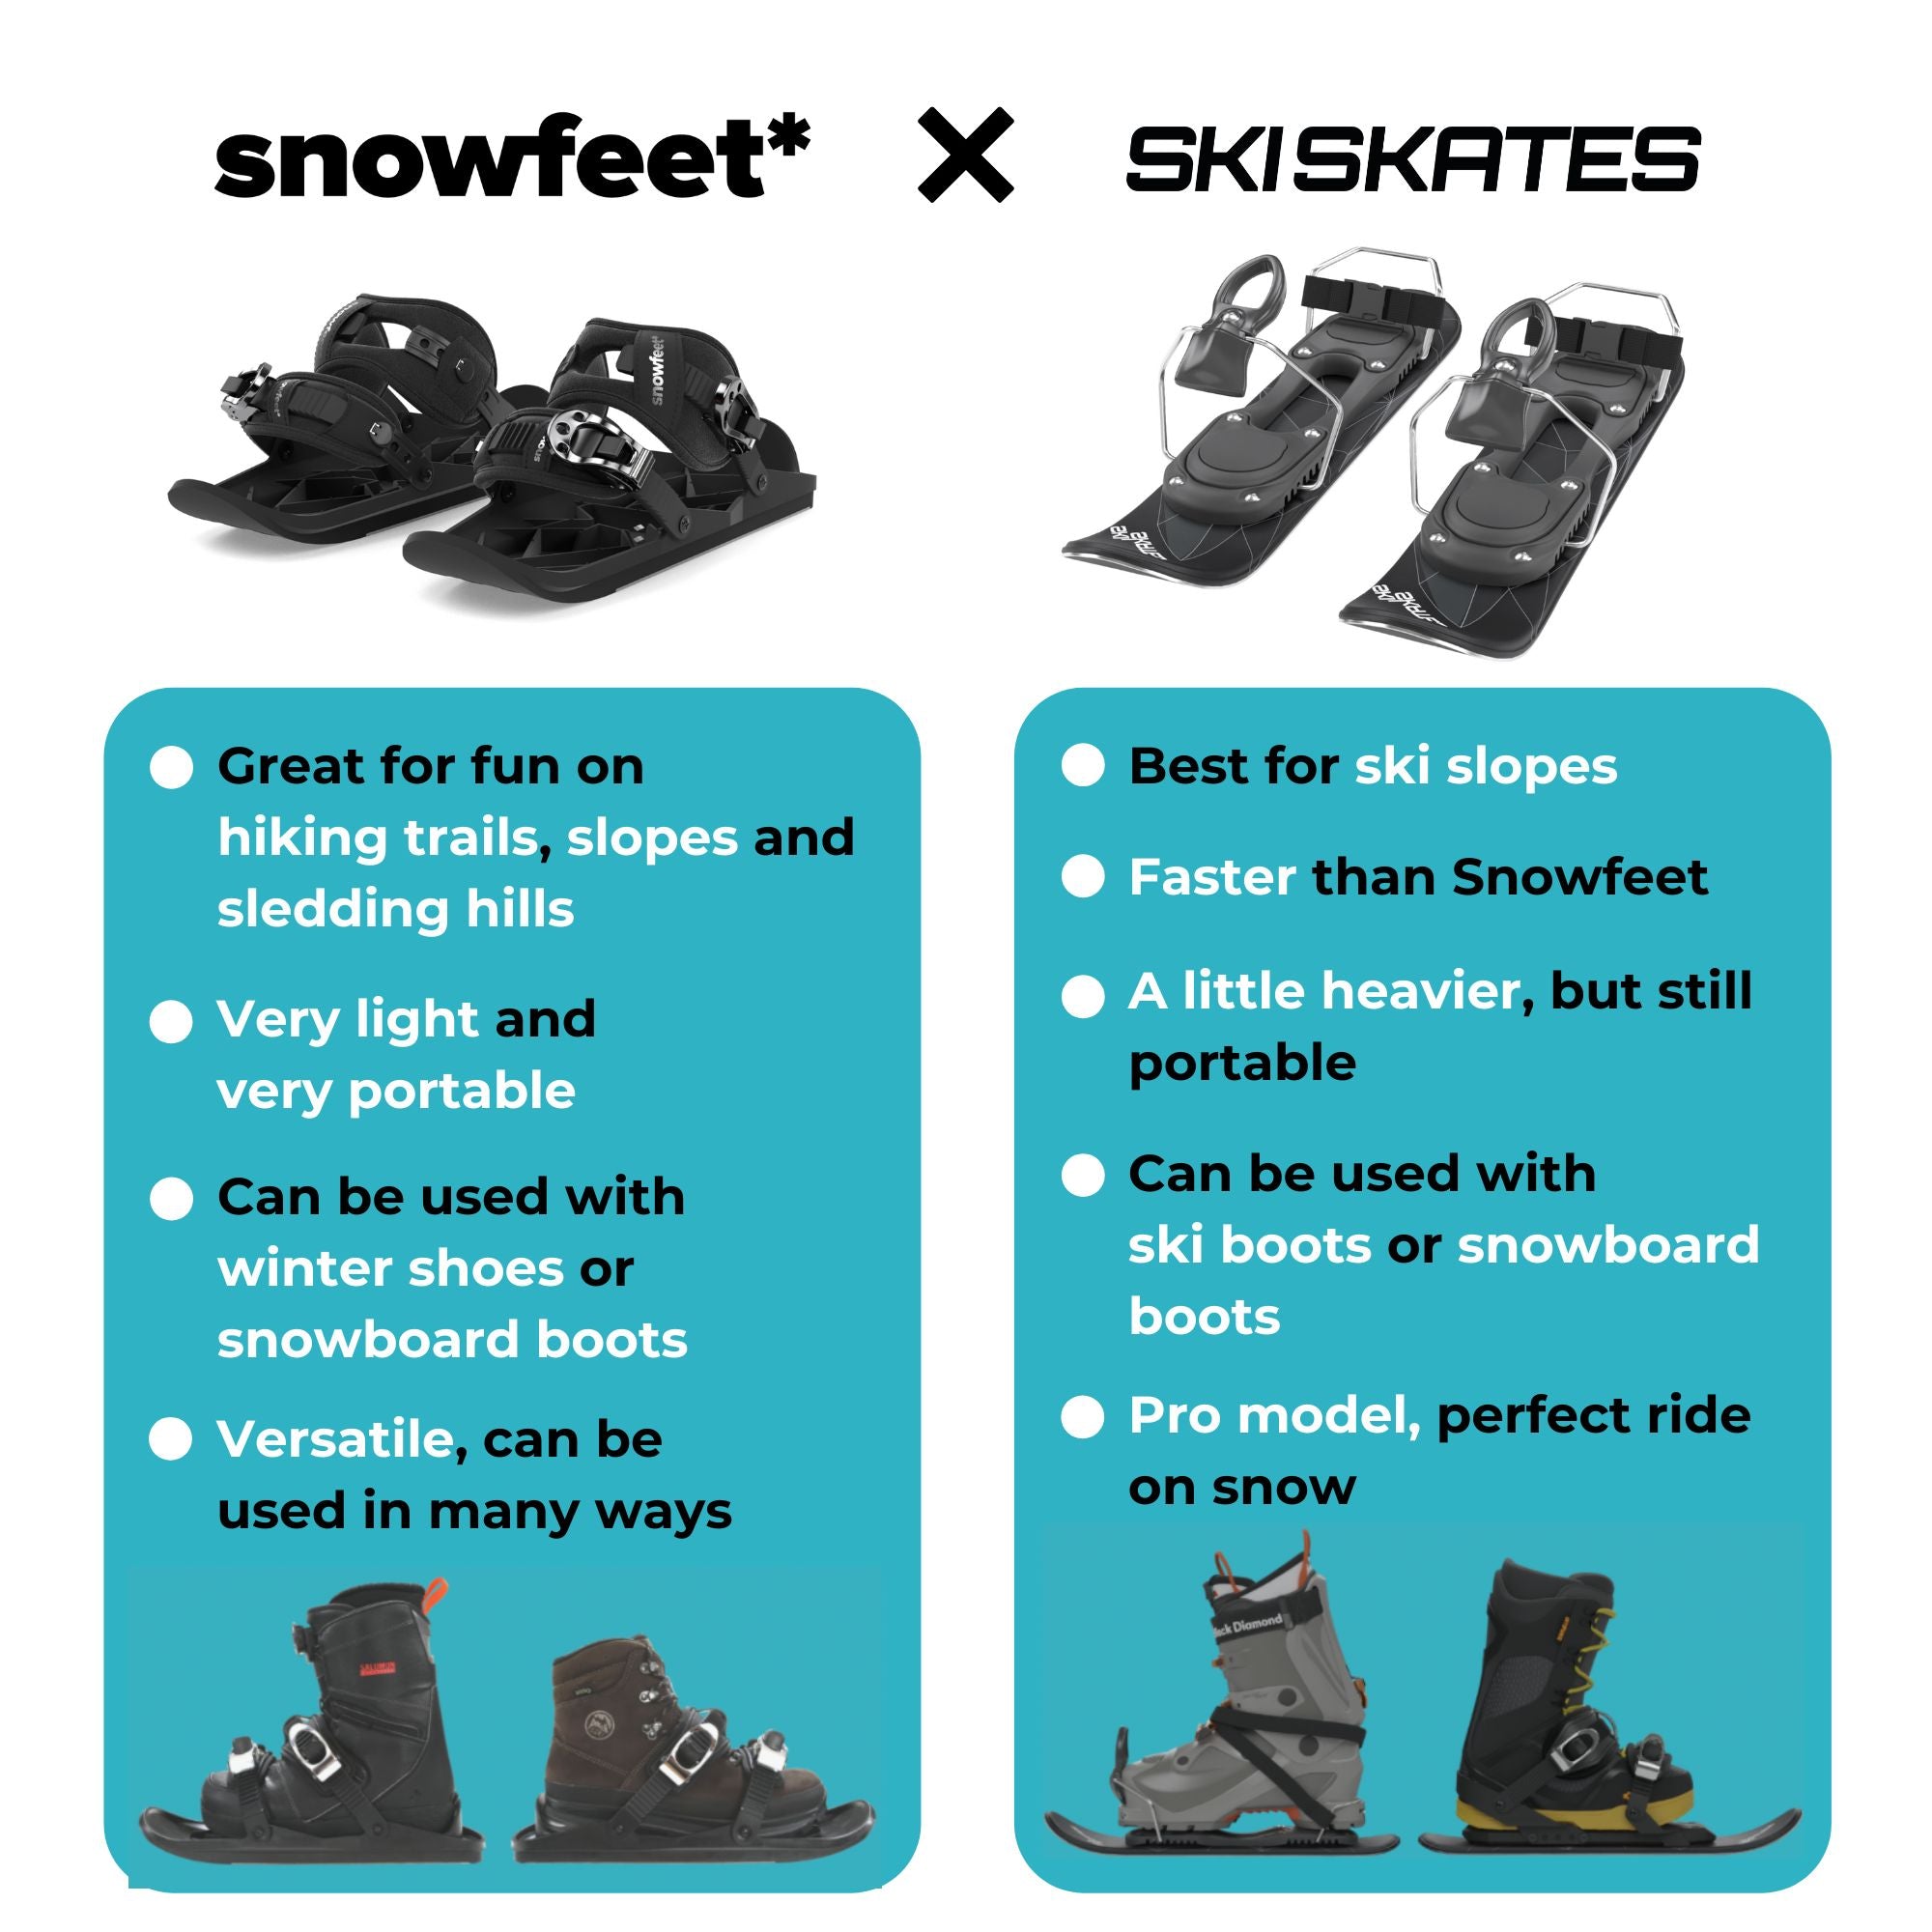 skiskates versus snowfeet comparison miniski shortski shortestski ski boots